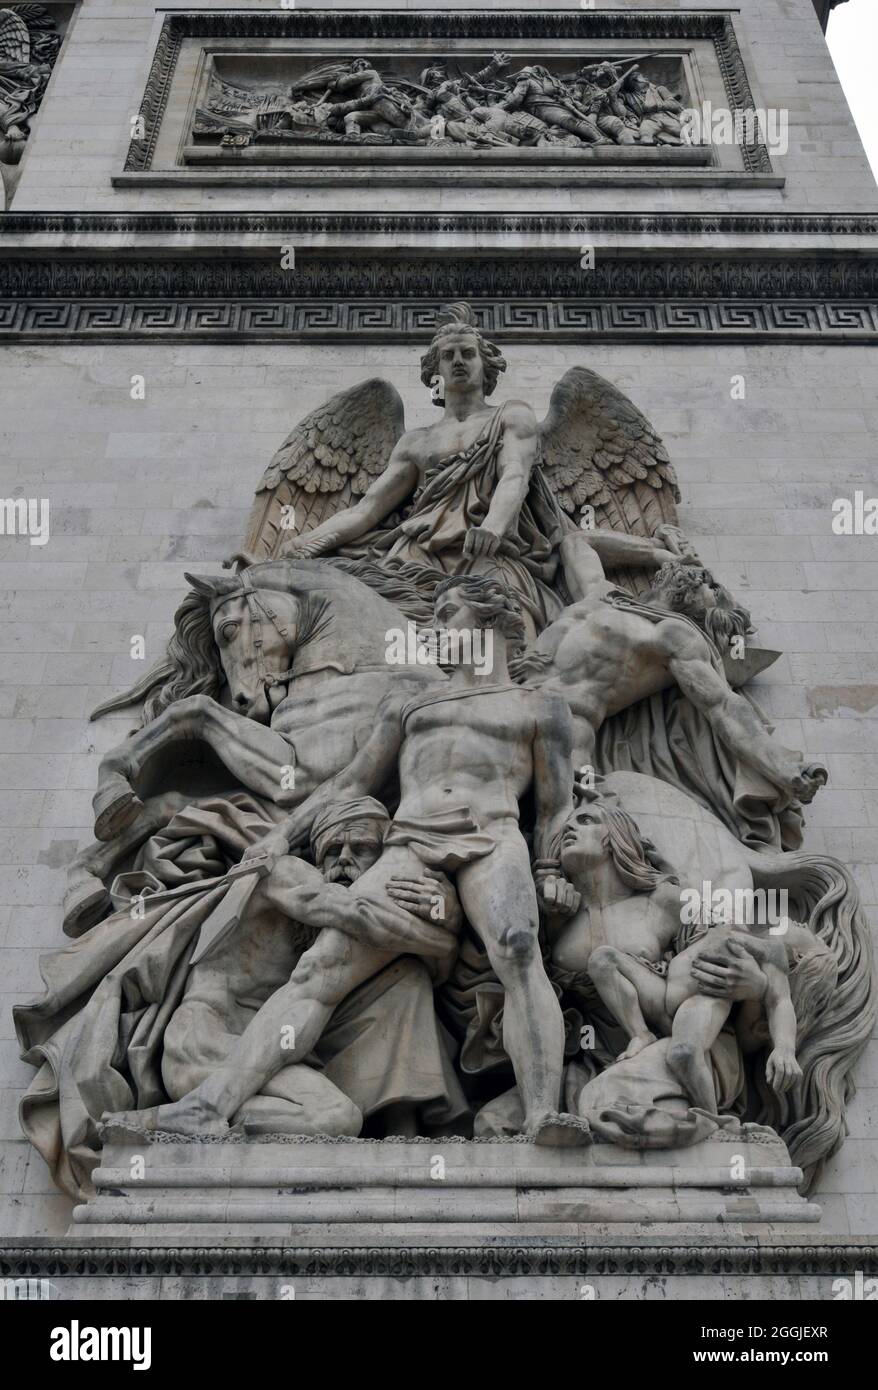 Particolare del gruppo scultoreo la Résistance de 1814, dello scultore Antoine Étex, sul punto di riferimento Arc de Triomphe in Place Charles de Gaulle di Parigi. Foto Stock